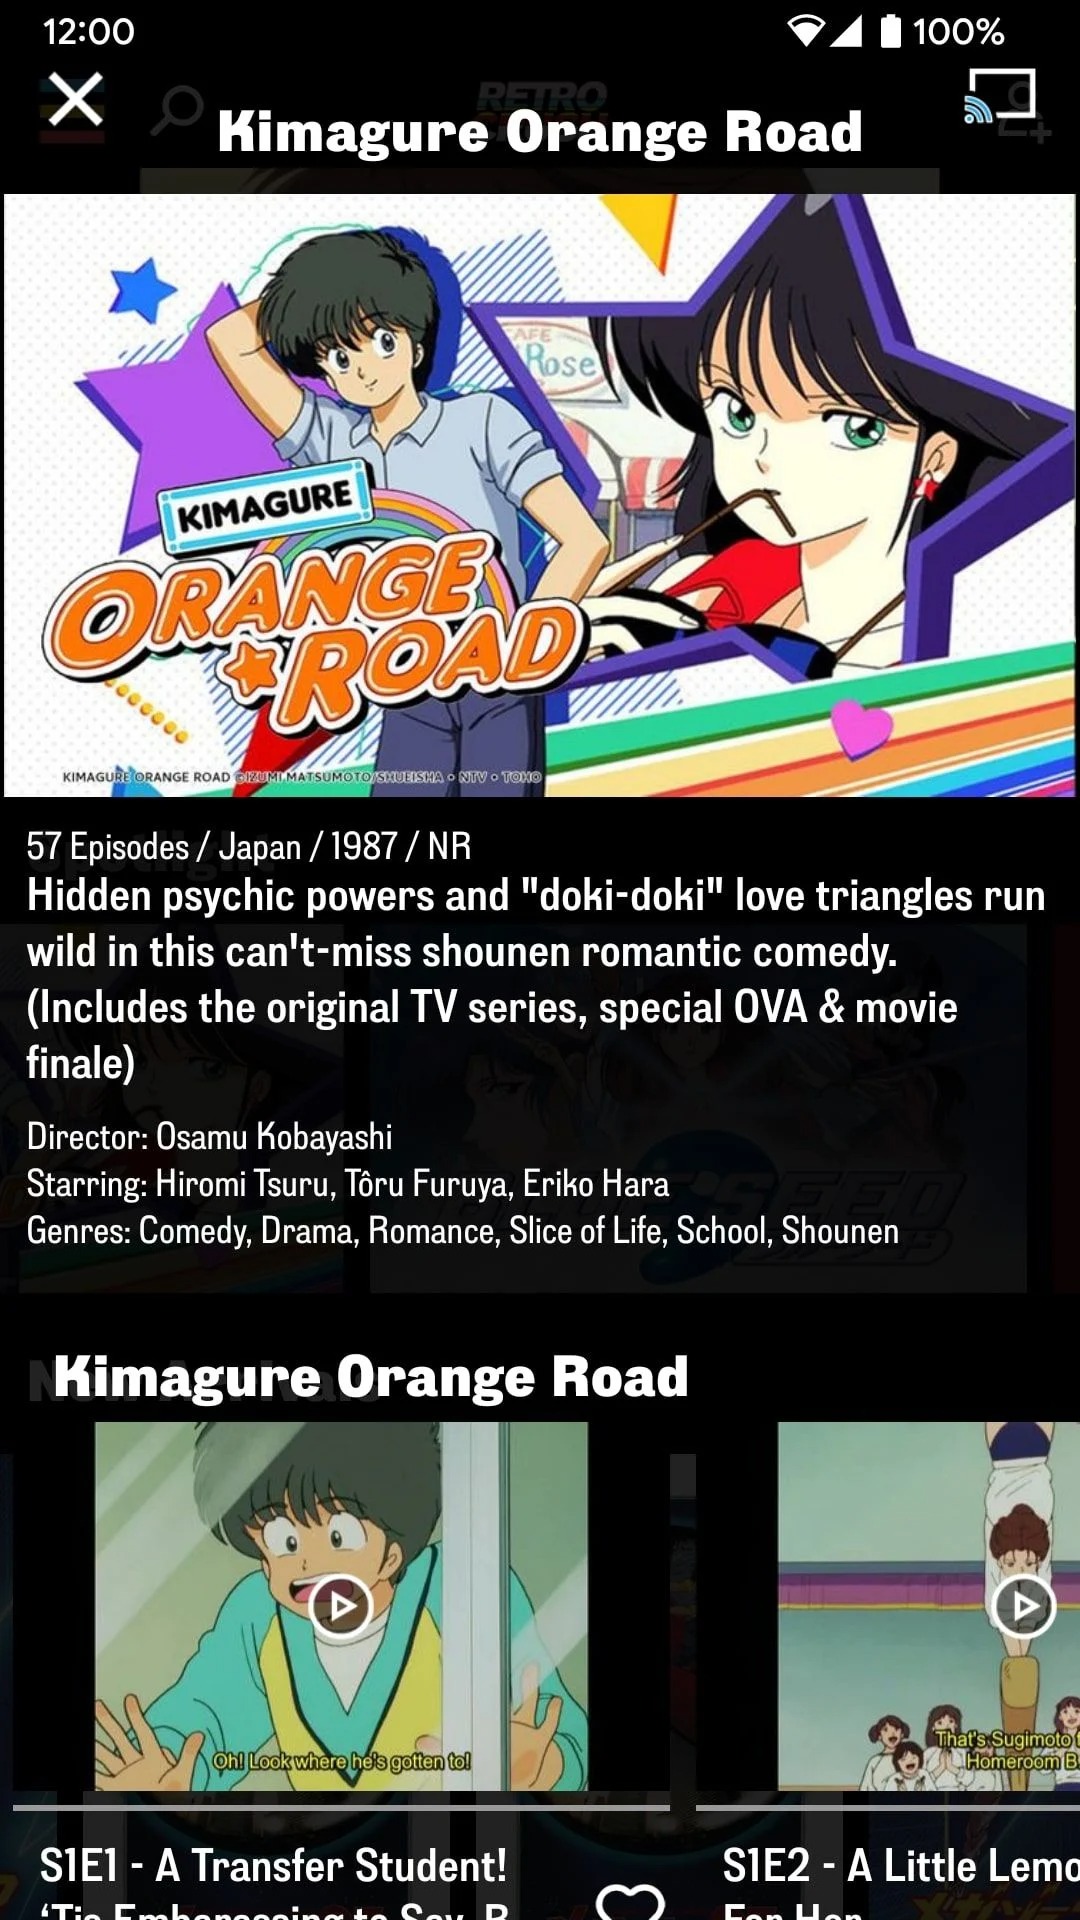 aplikasi streaming anime terbaik